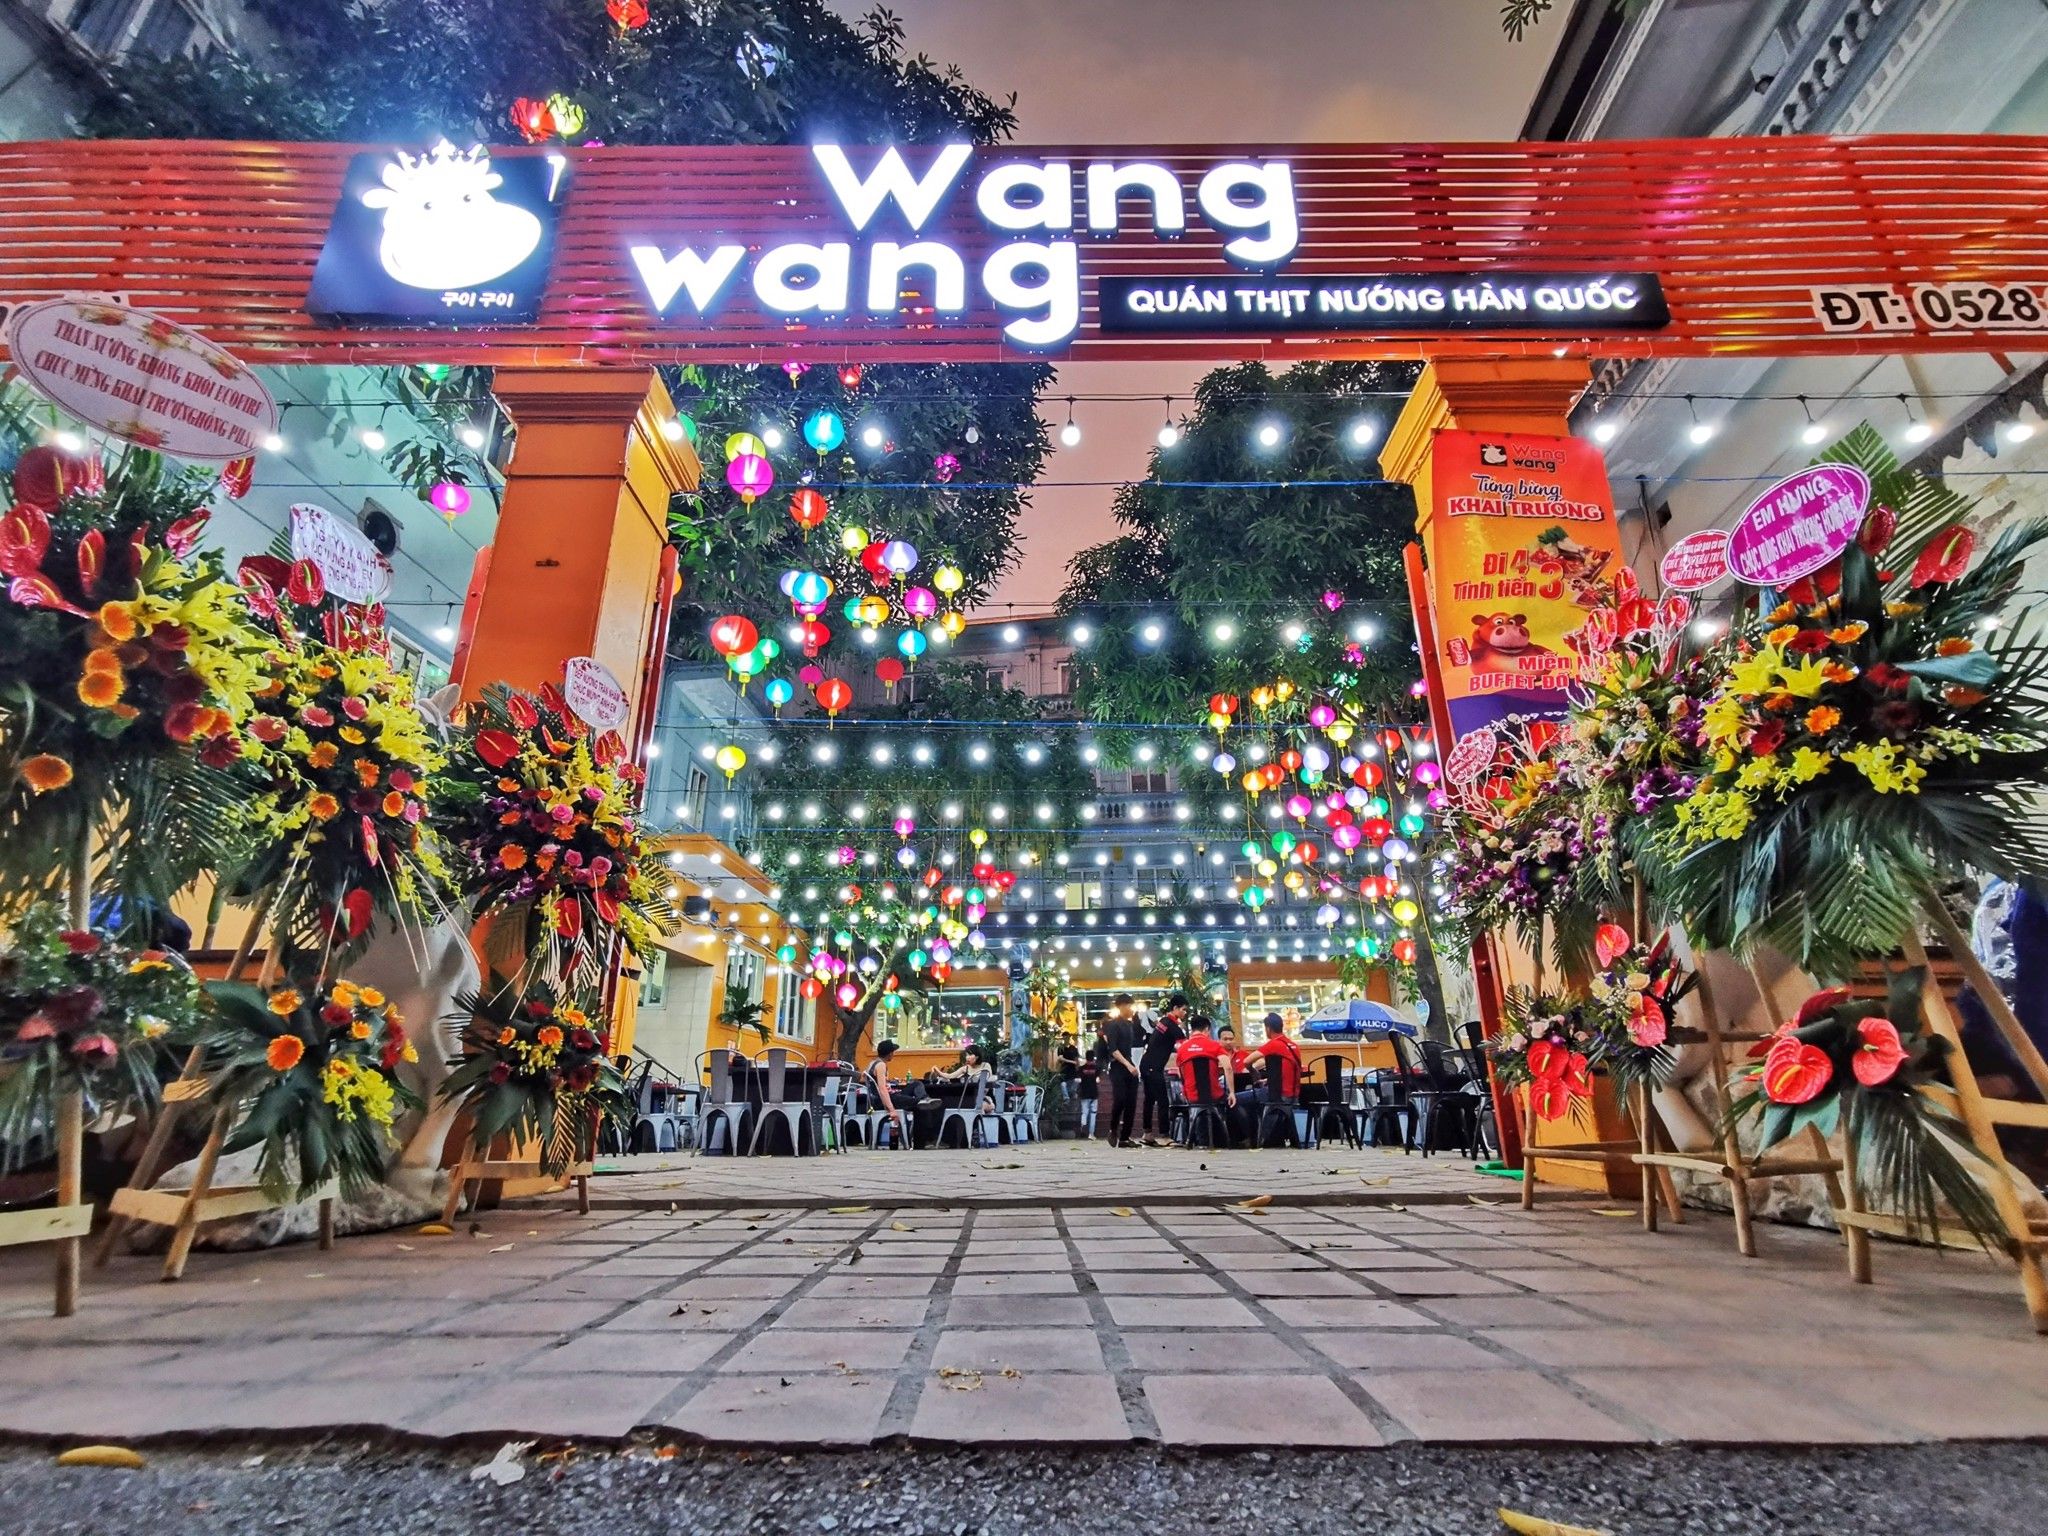 Lẩu Nướng Wang Wang - Tô Hiệu